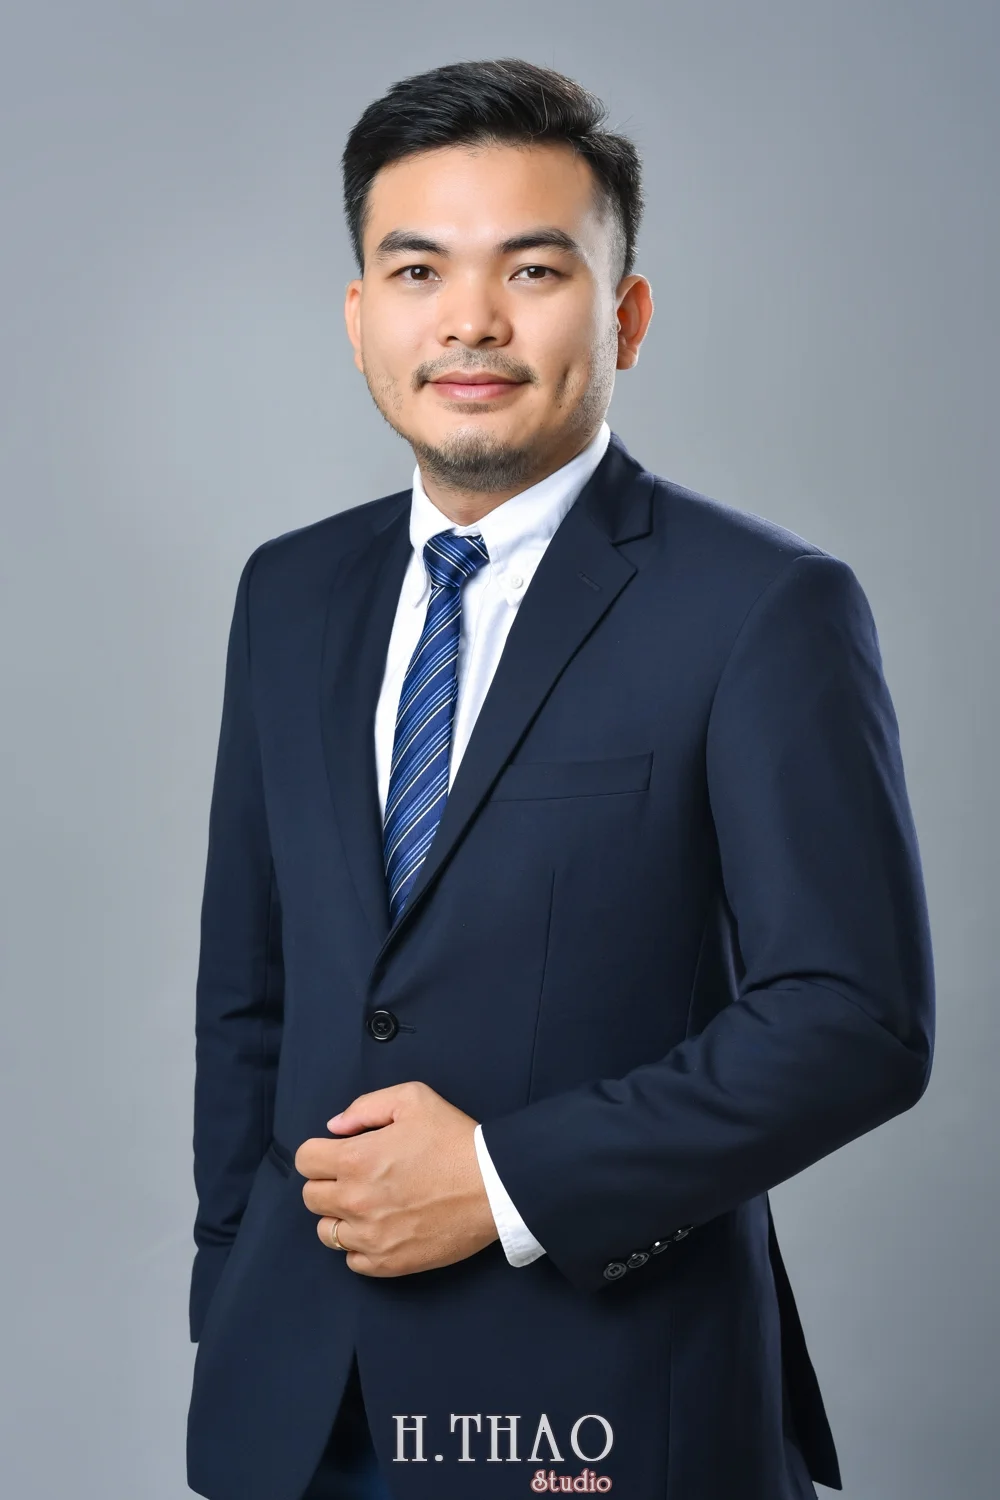 Anh profile cong ty 4 - Báo giá chụp hình Công ty -Doanh nghiệp ở Tp.HCM